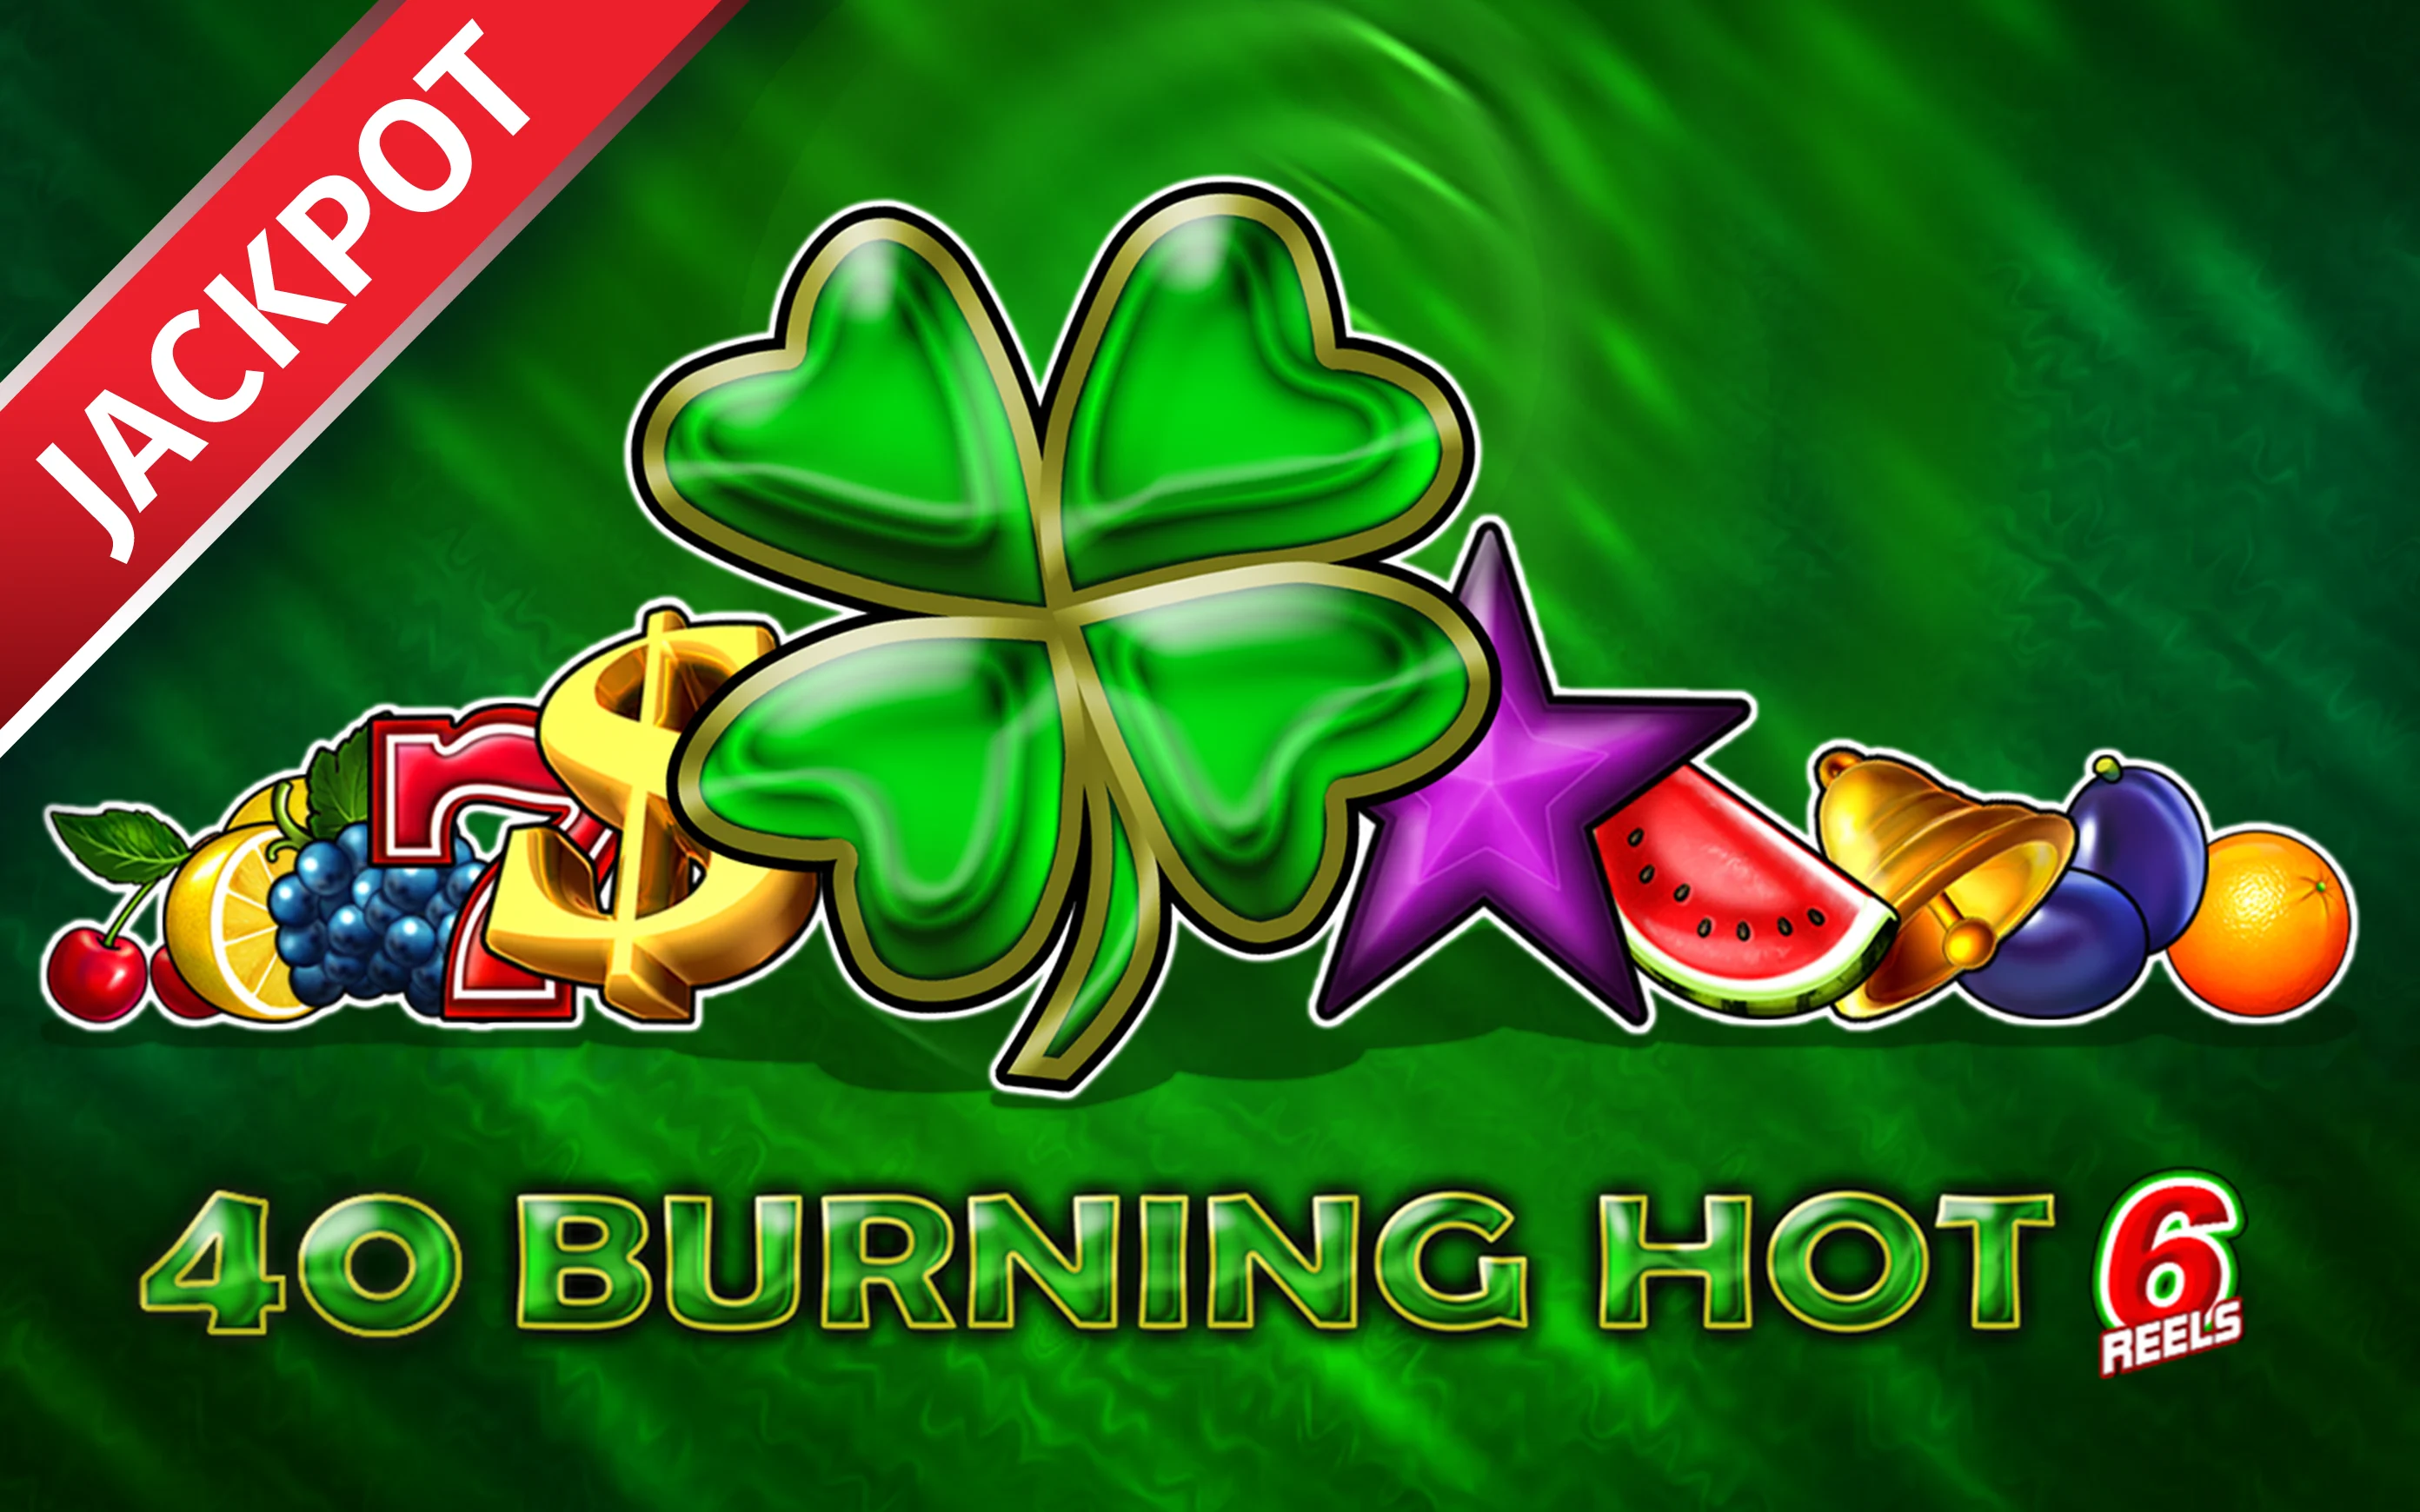 Spielen Sie 40 Burning Hot 6 Reels auf Starcasino.be-Online-Casino